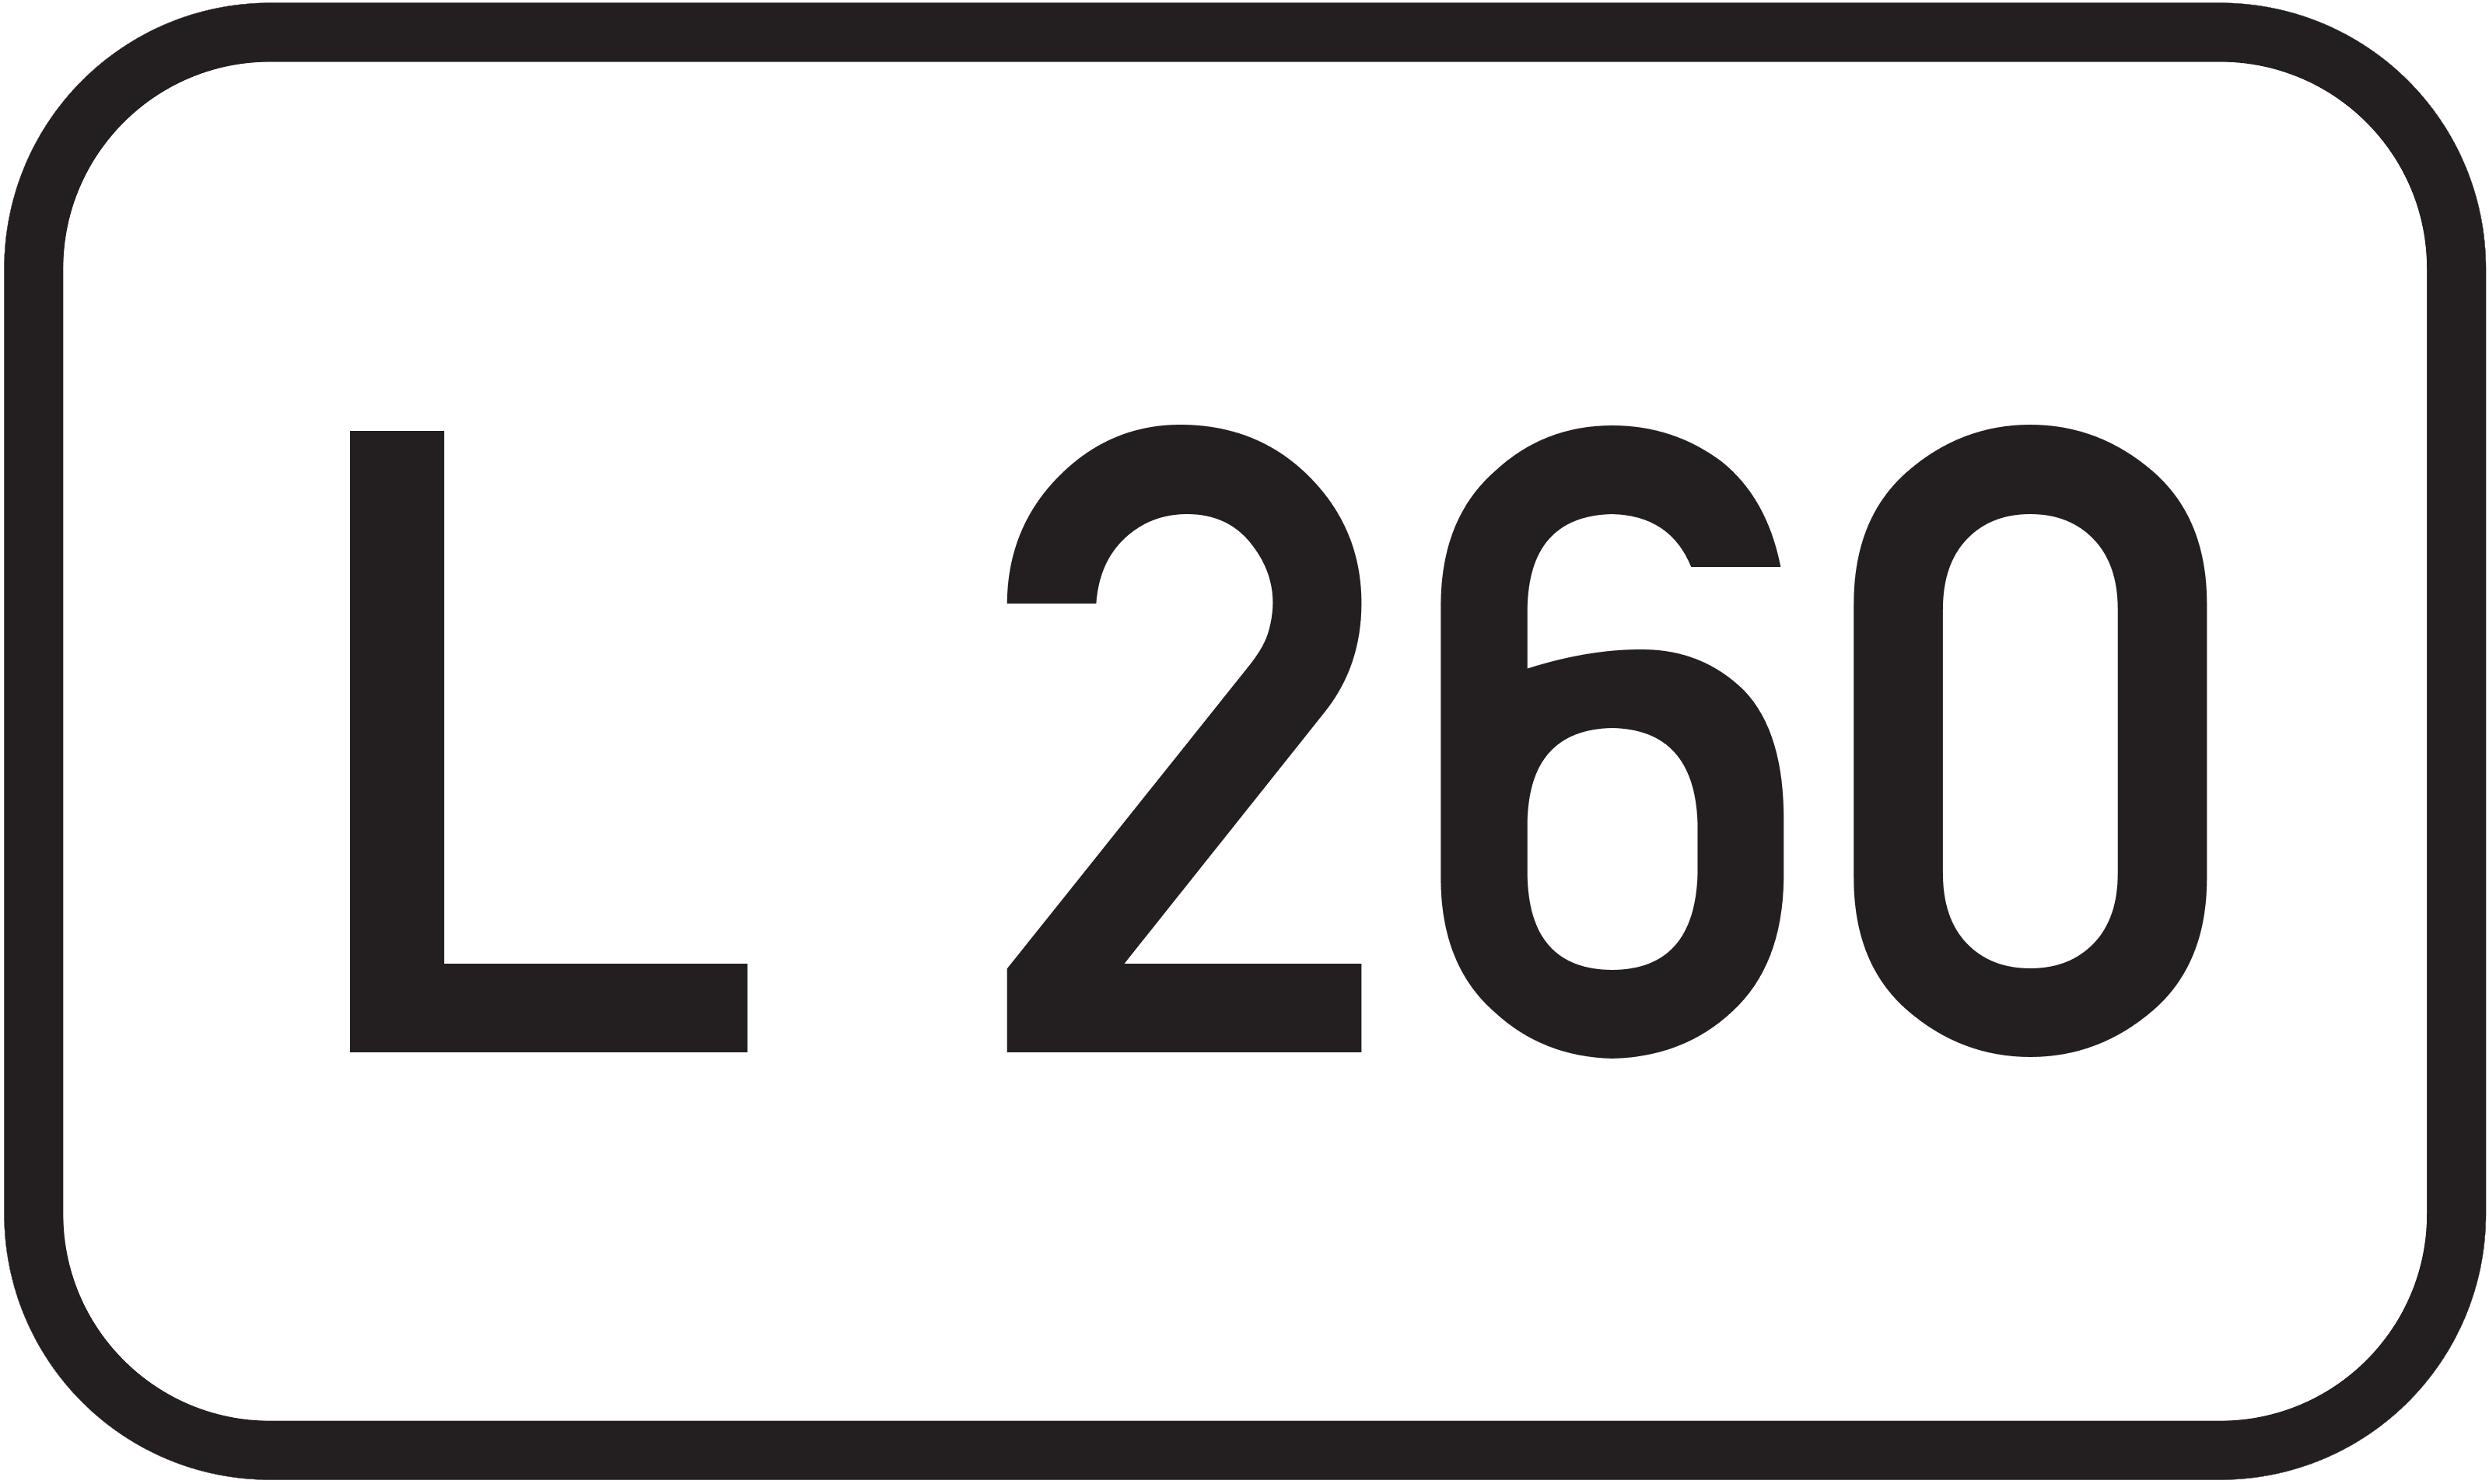 Landesstraße L 260